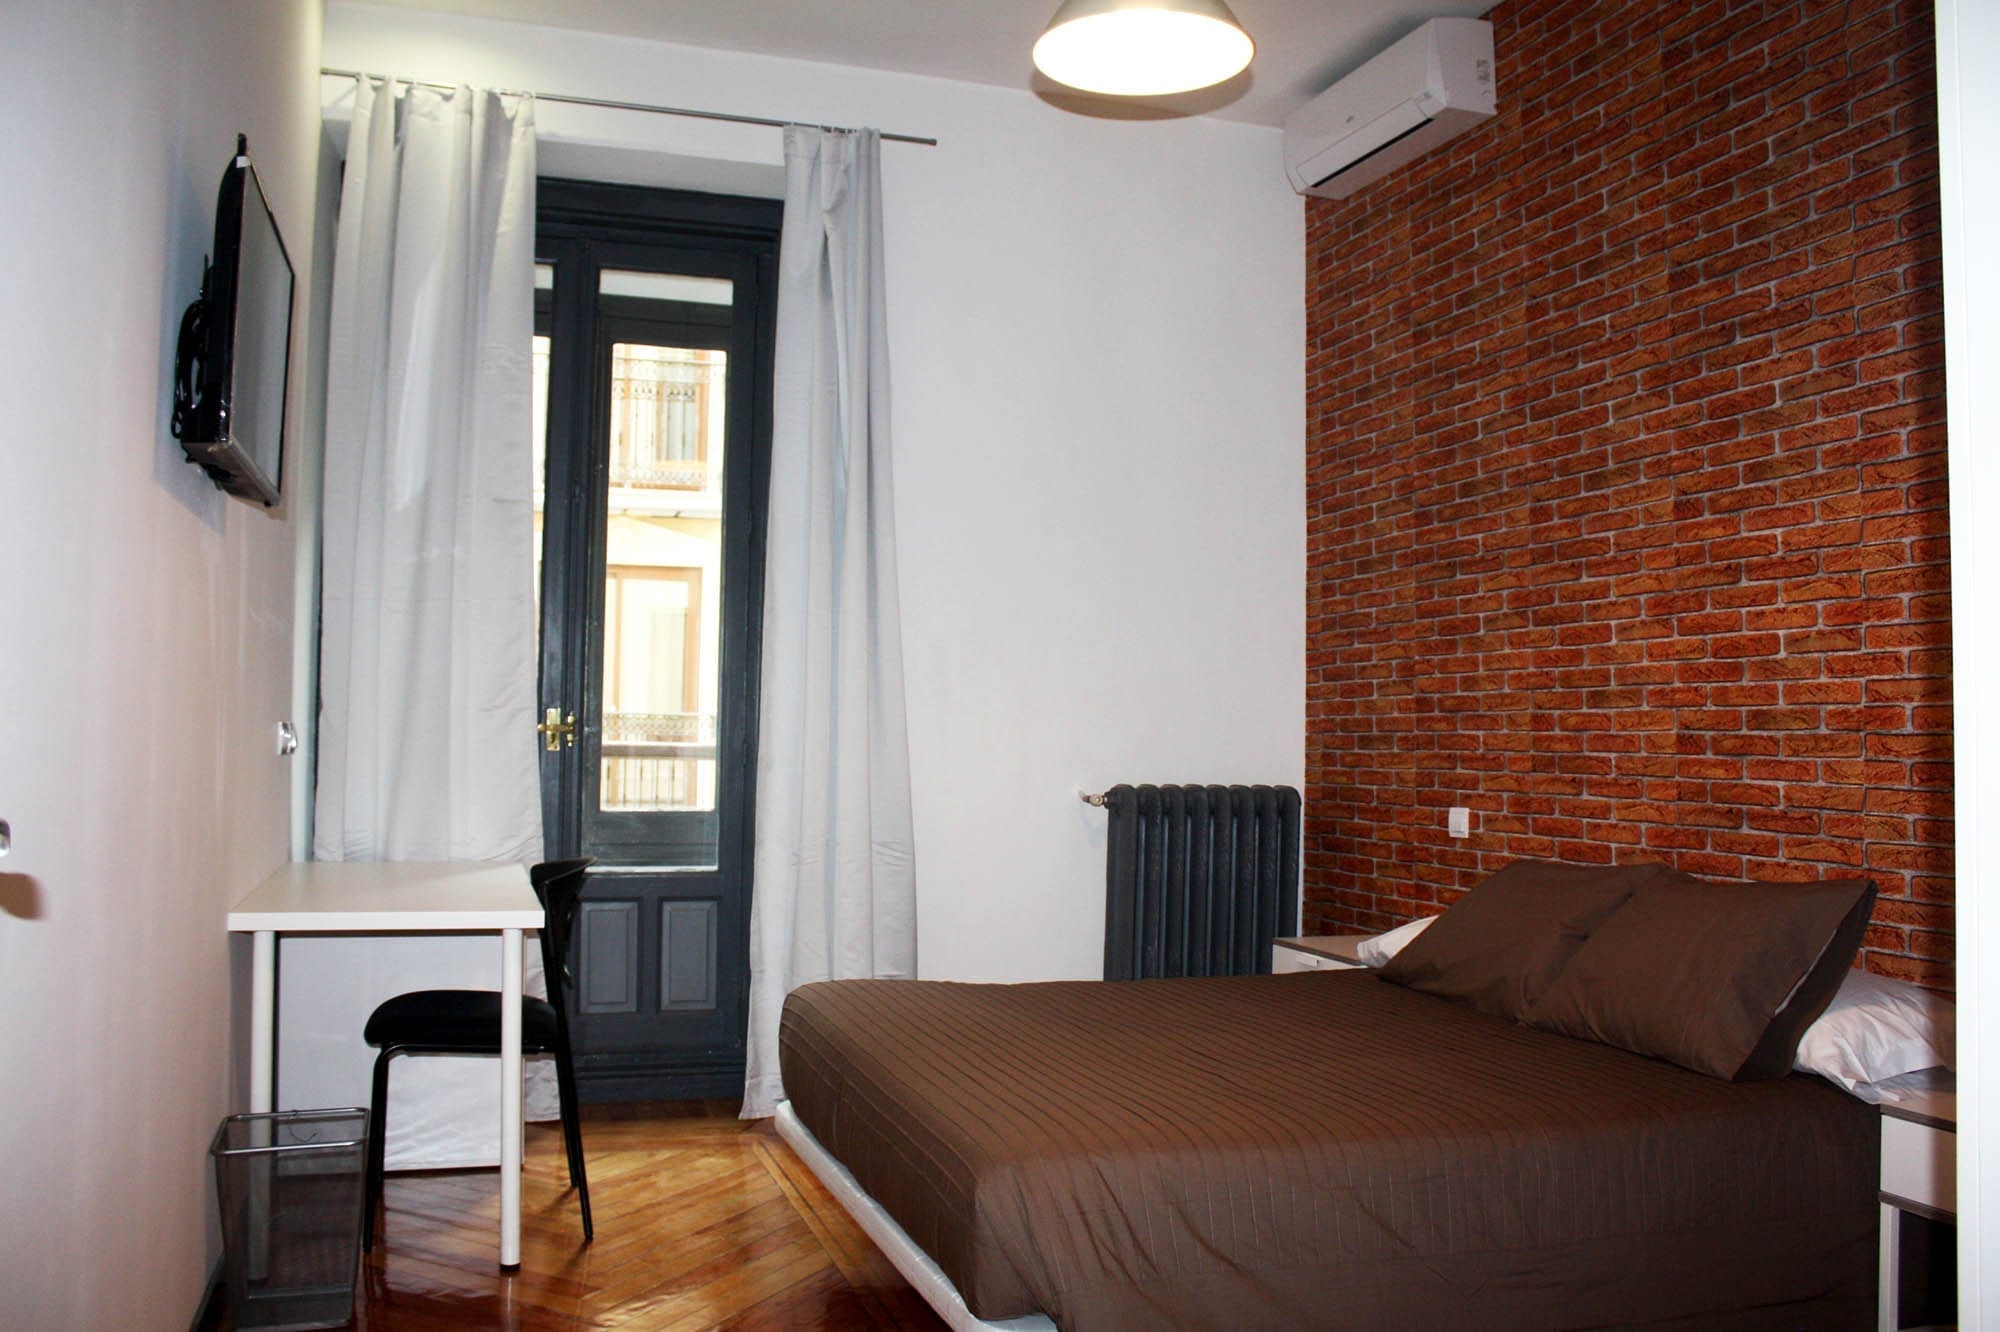 Room. 04 student apartment in gran via 15 vitium residencias